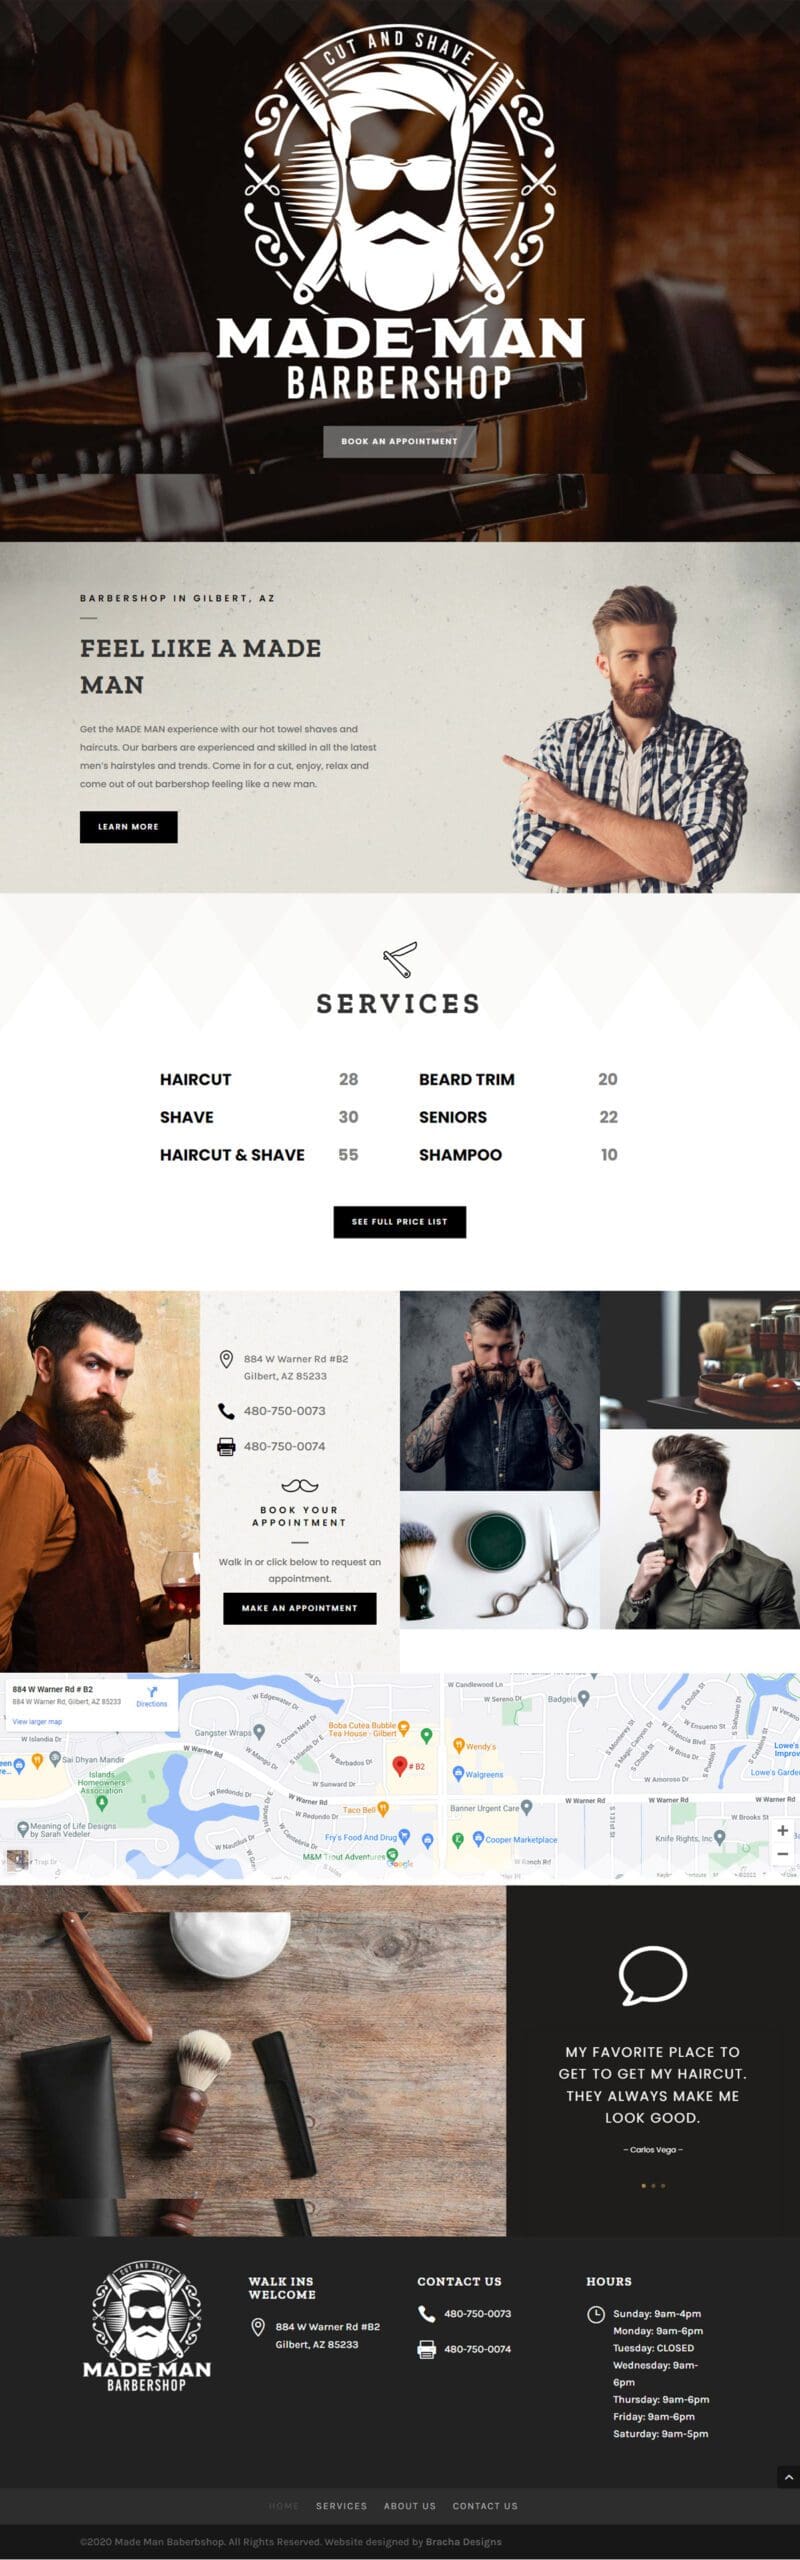 Men’s Barbershop Website